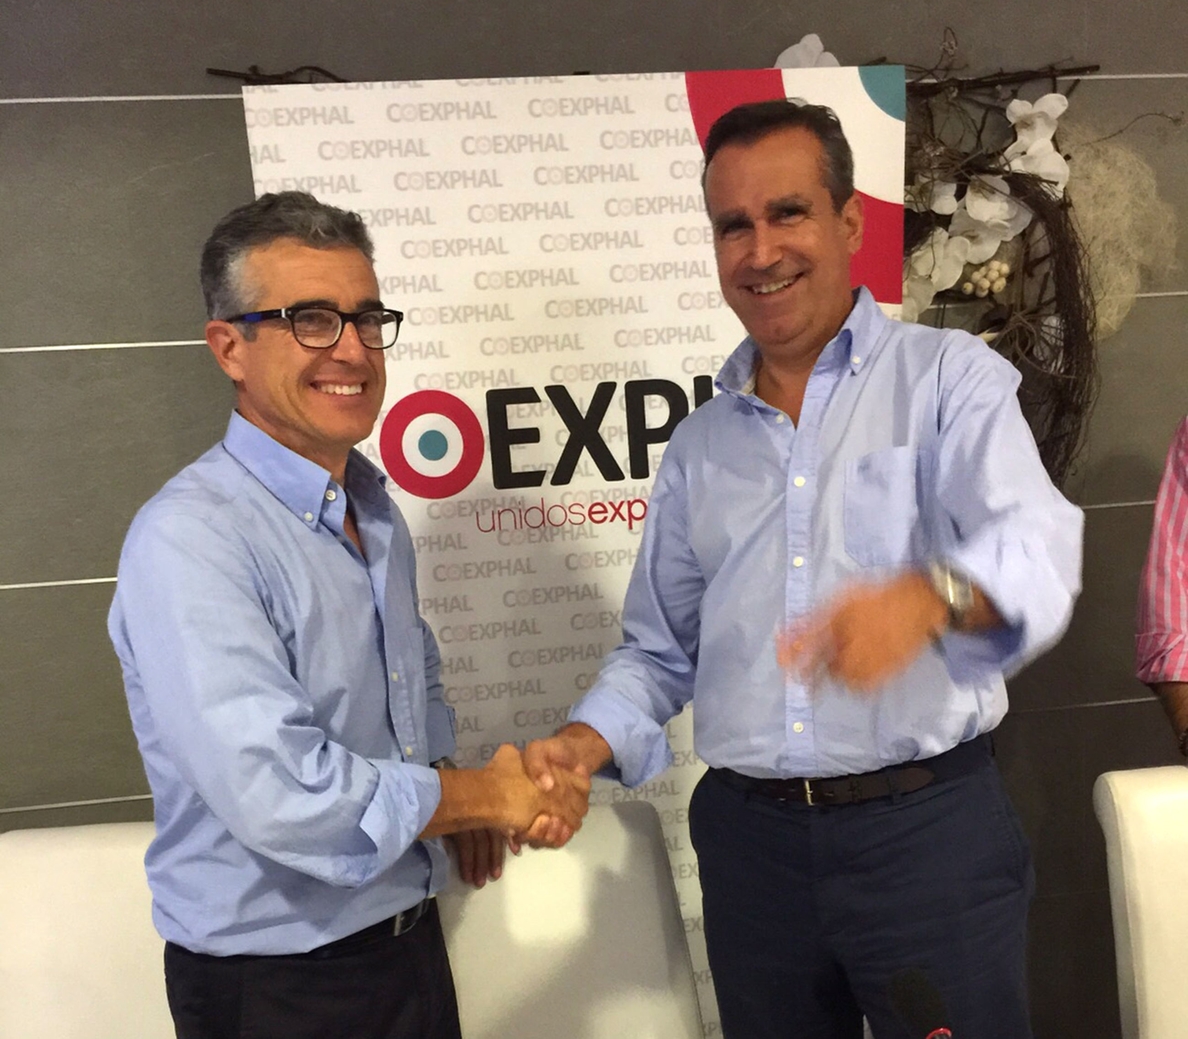 Coexphal abre etapa y nombra a Luis Miguel Fernández nuevo gerente tras 26 años de gestión de Juan Colomina